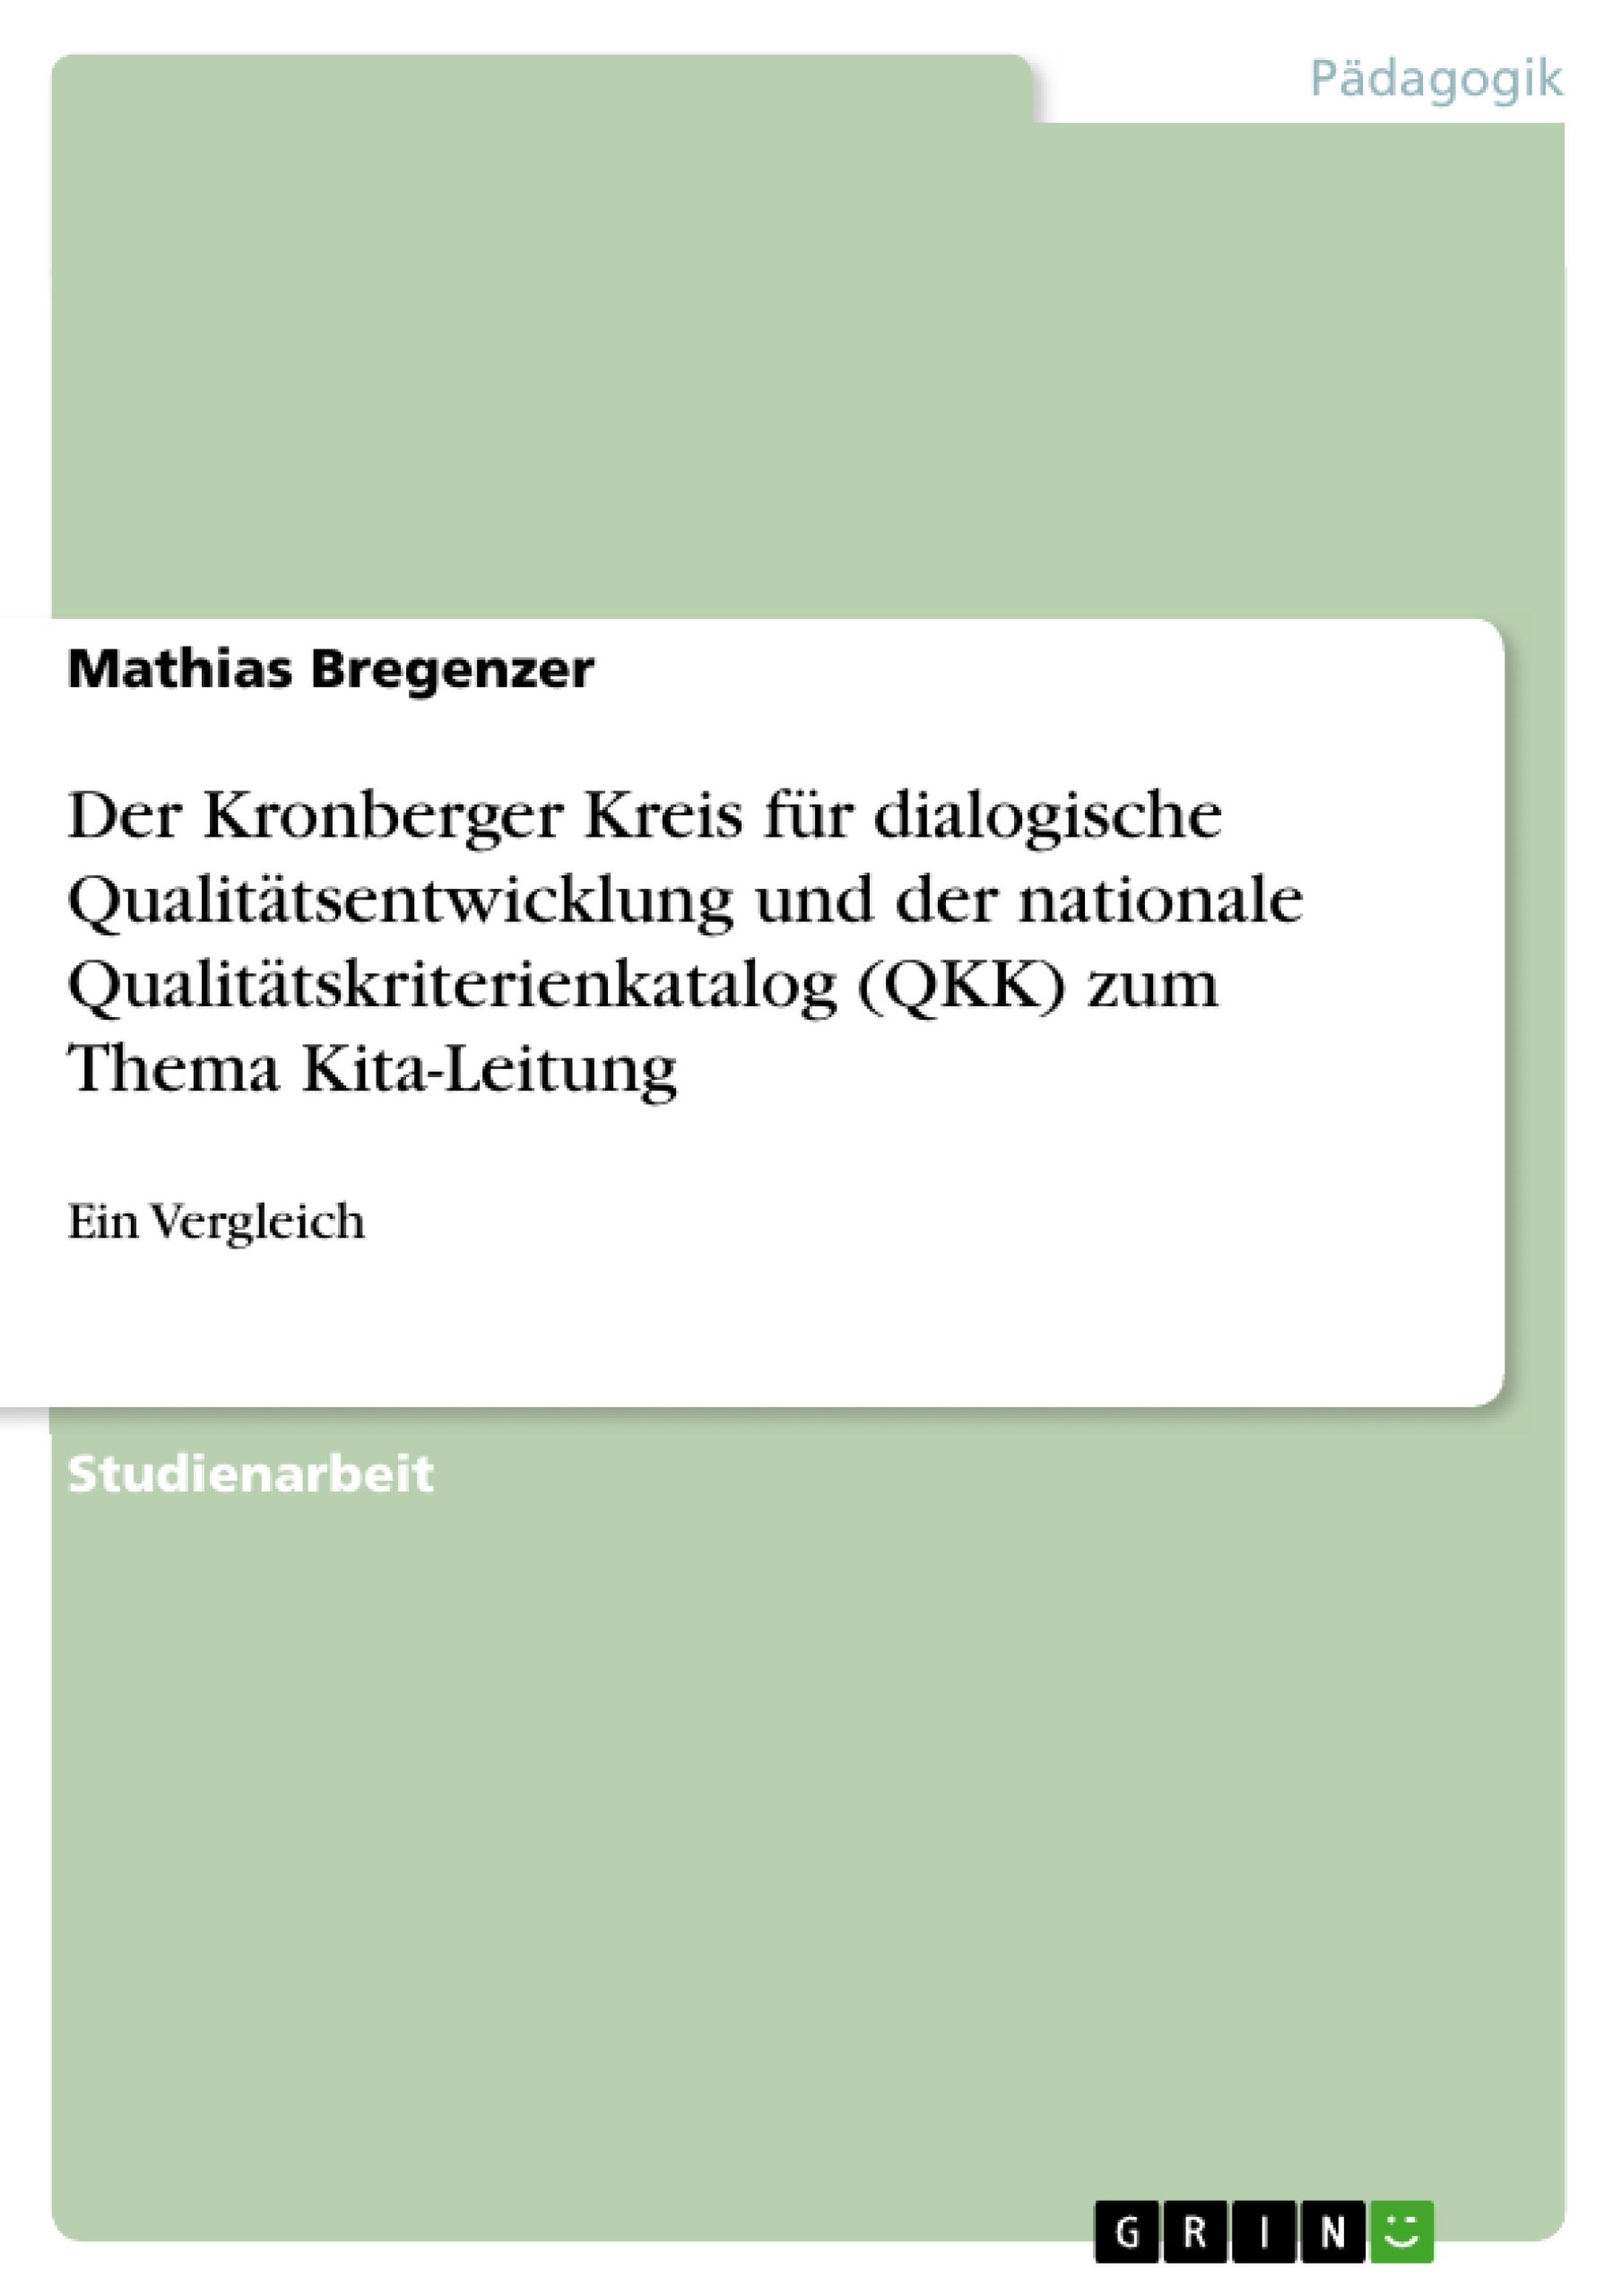 Title: Der Kronberger Kreis für dialogische Qualitätsentwicklung und der nationale Qualitätskriterienkatalog (QKK) zum Thema Kita-Leitung